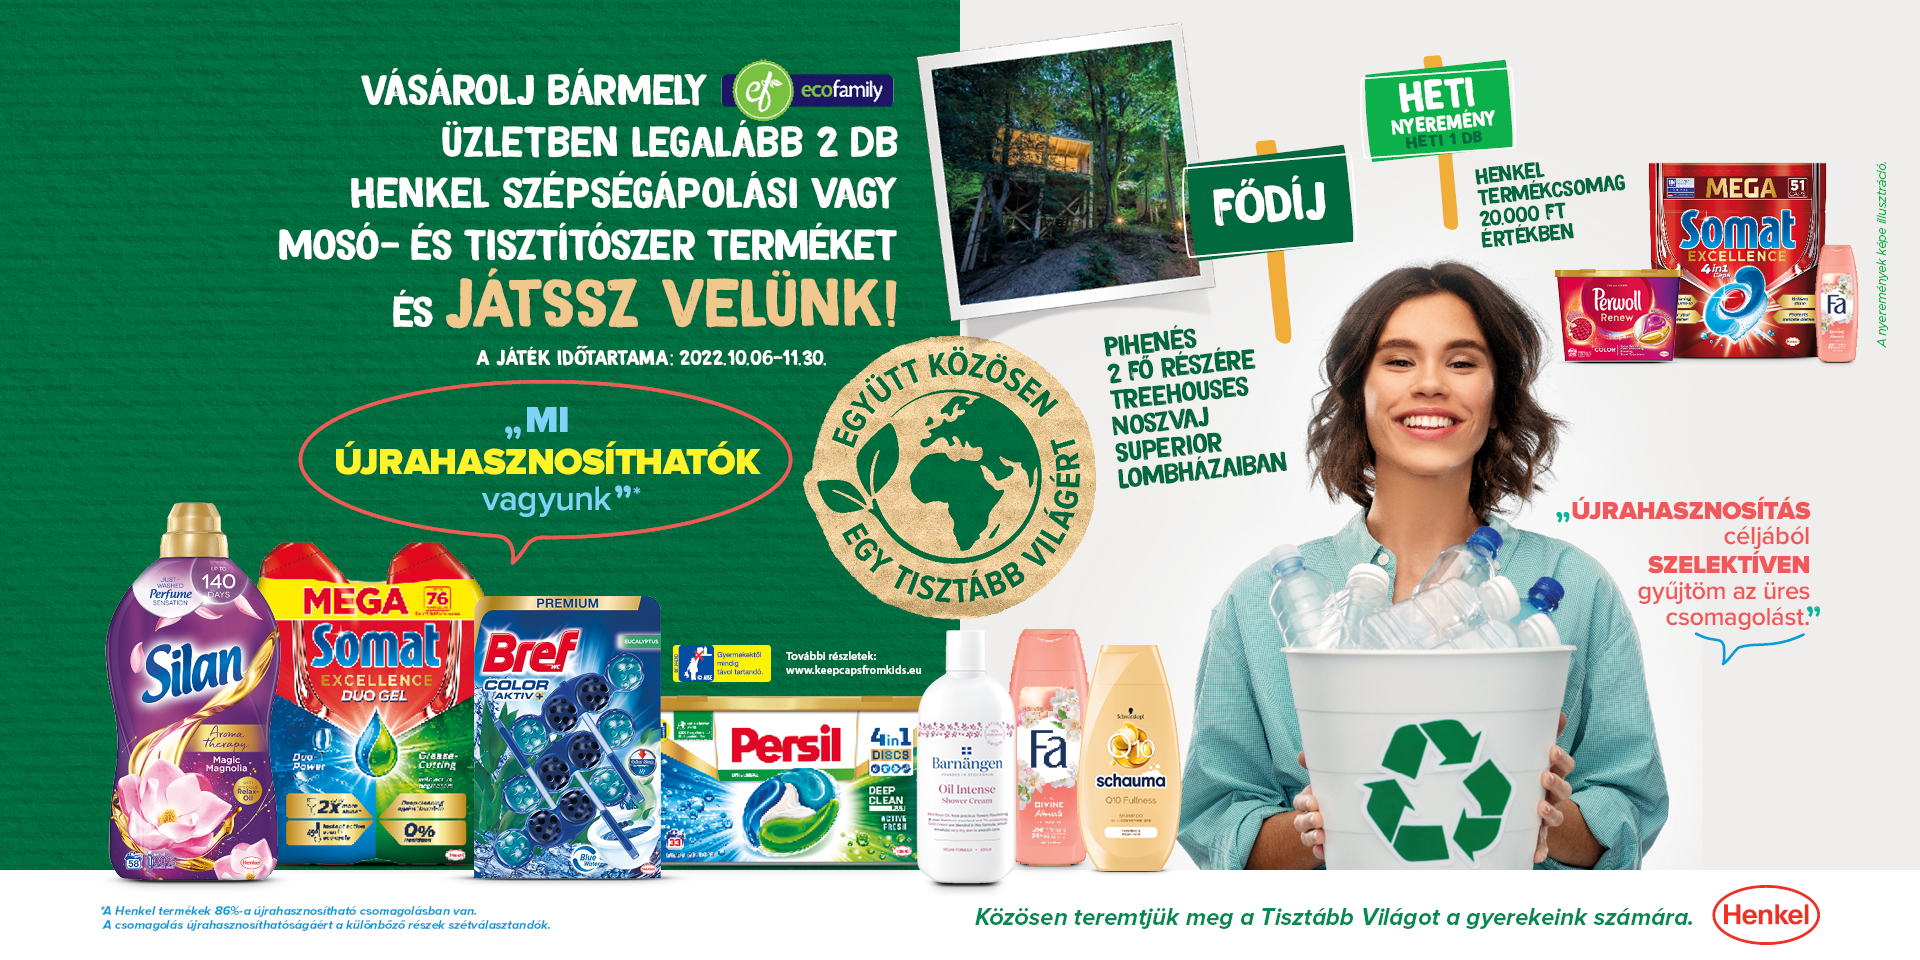 <p>Vásárolj bármely Ecofamily áruházban legalább 2db darab Henkel szépségápolási vagy mosó- és tisztítószer terméket és játsz velünk!</p>